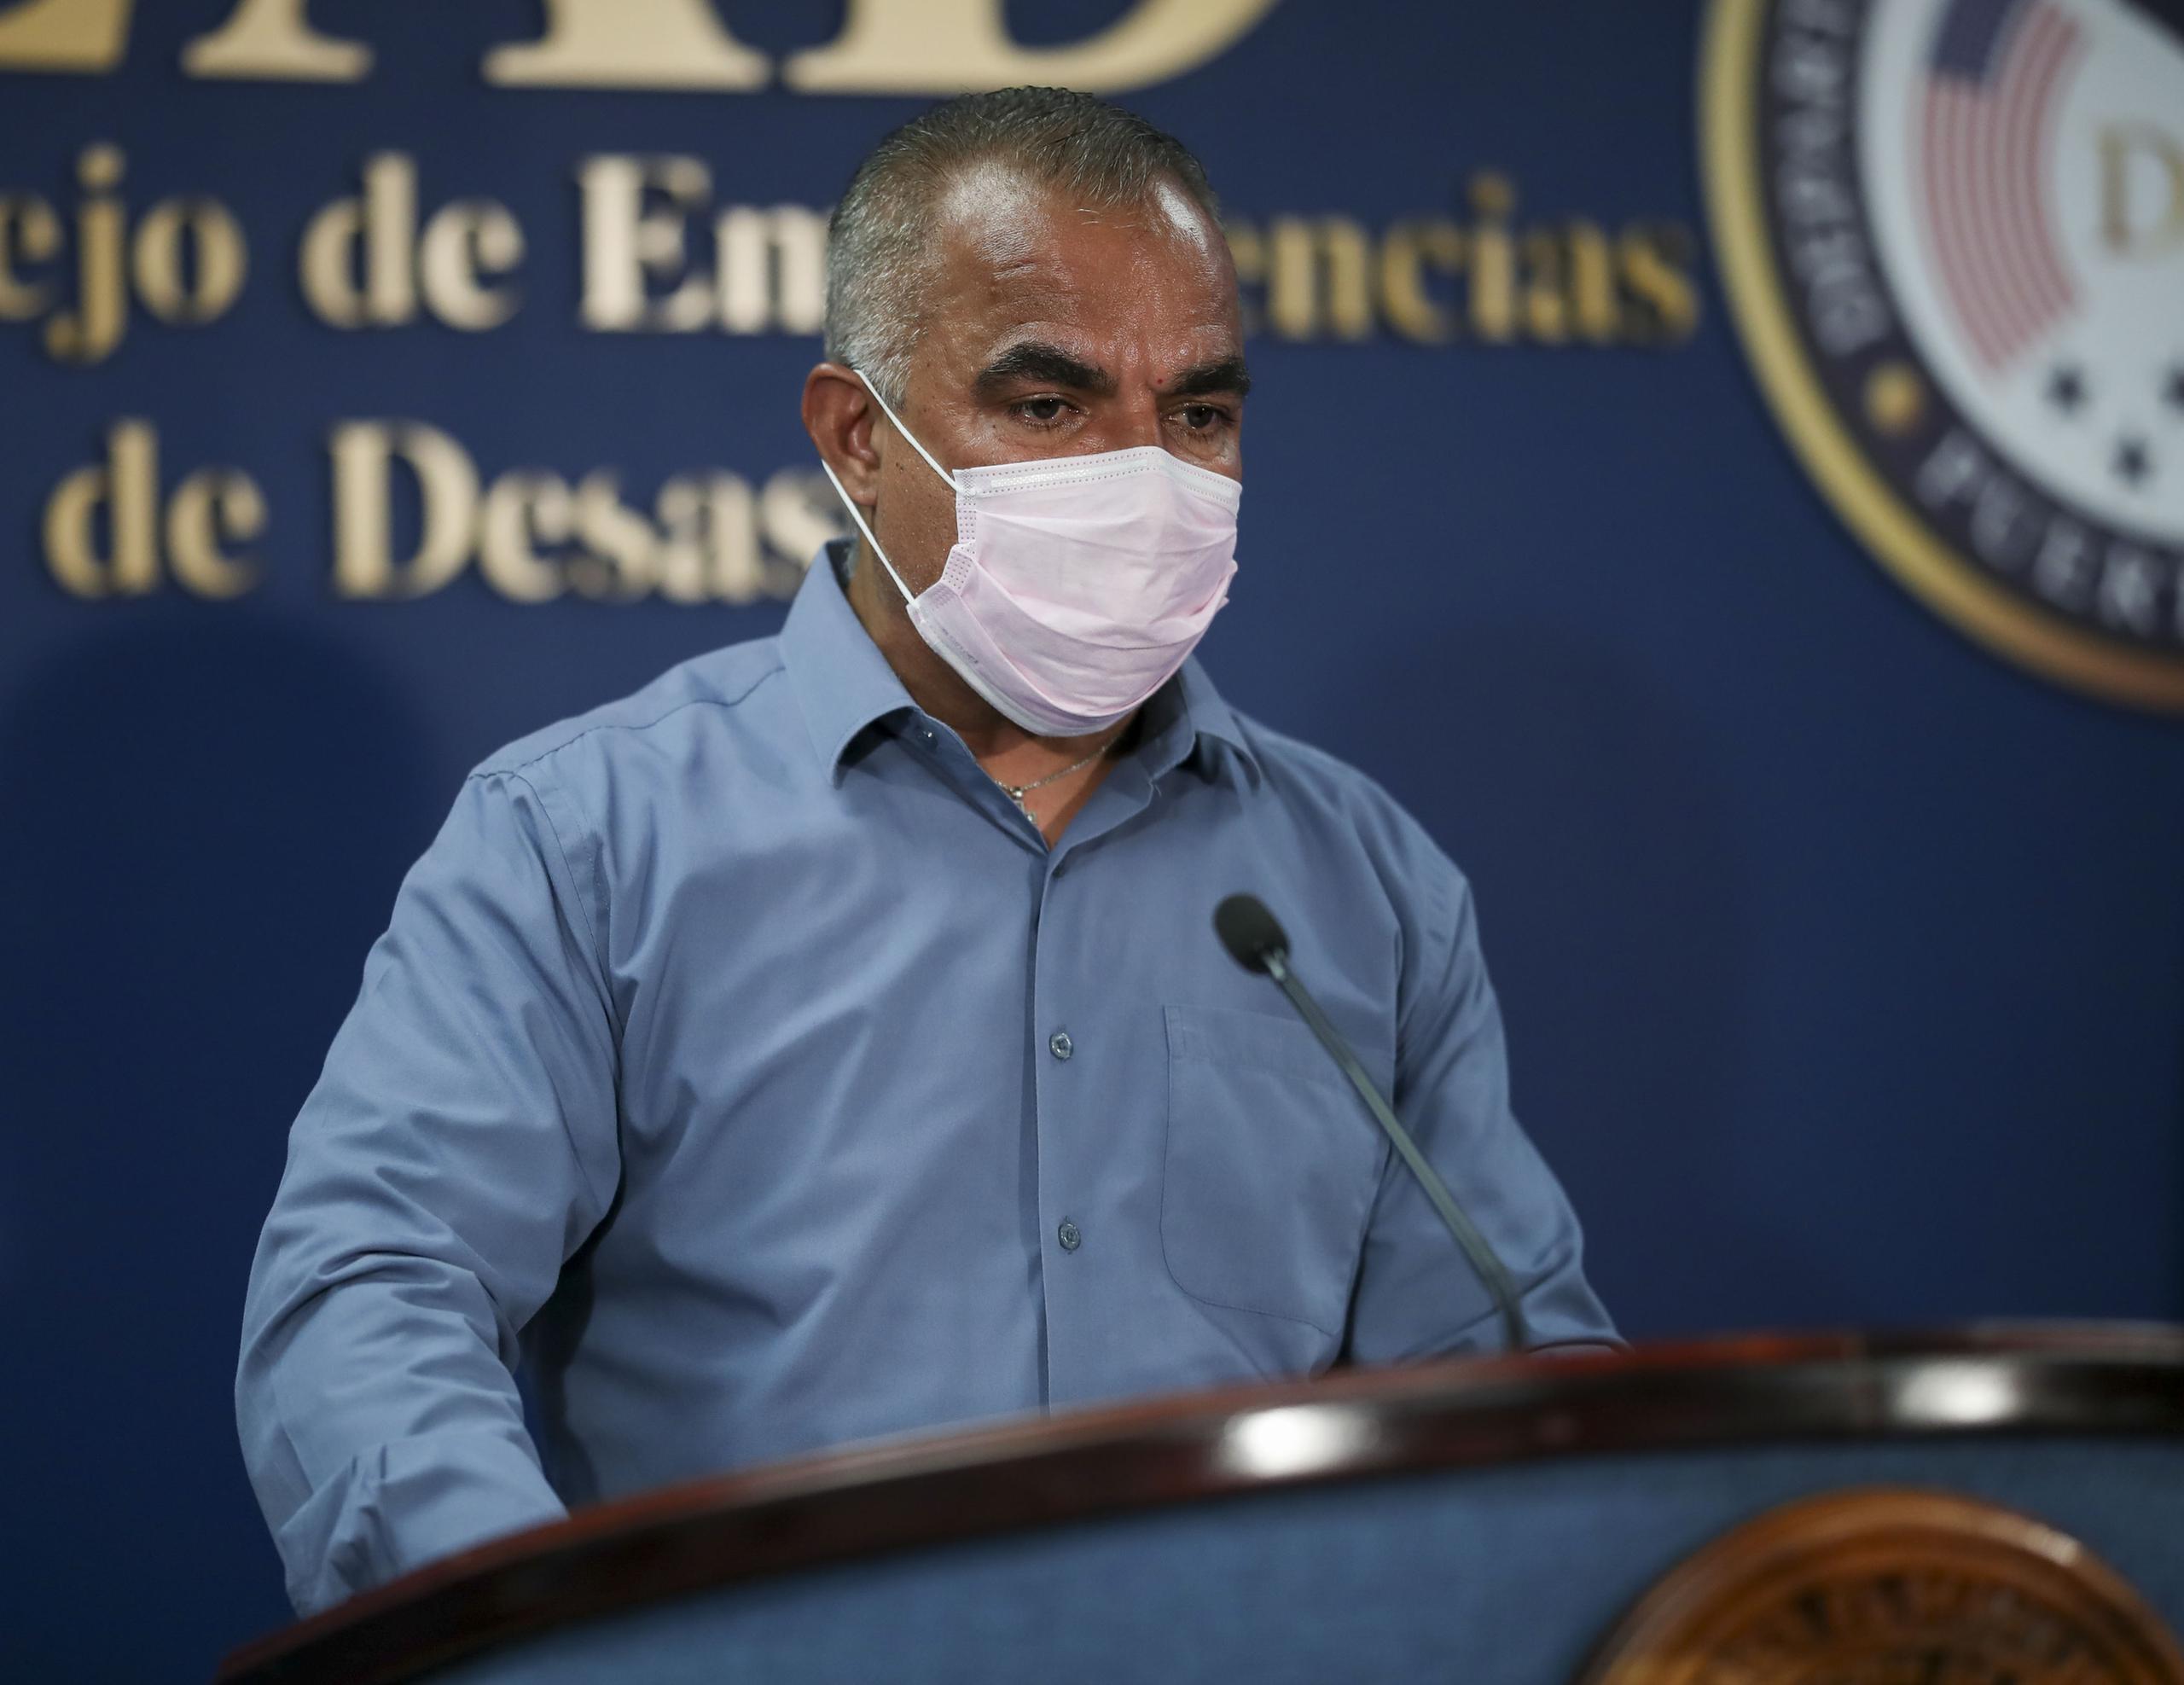 El secretario de Salud, Lorenzo González, indicó que el doctor David Capó era asesor y no Epidemiólogo de Salud, un puesto que, indica, no existía cuando laboró en la agencia entre 2009 y 2012.